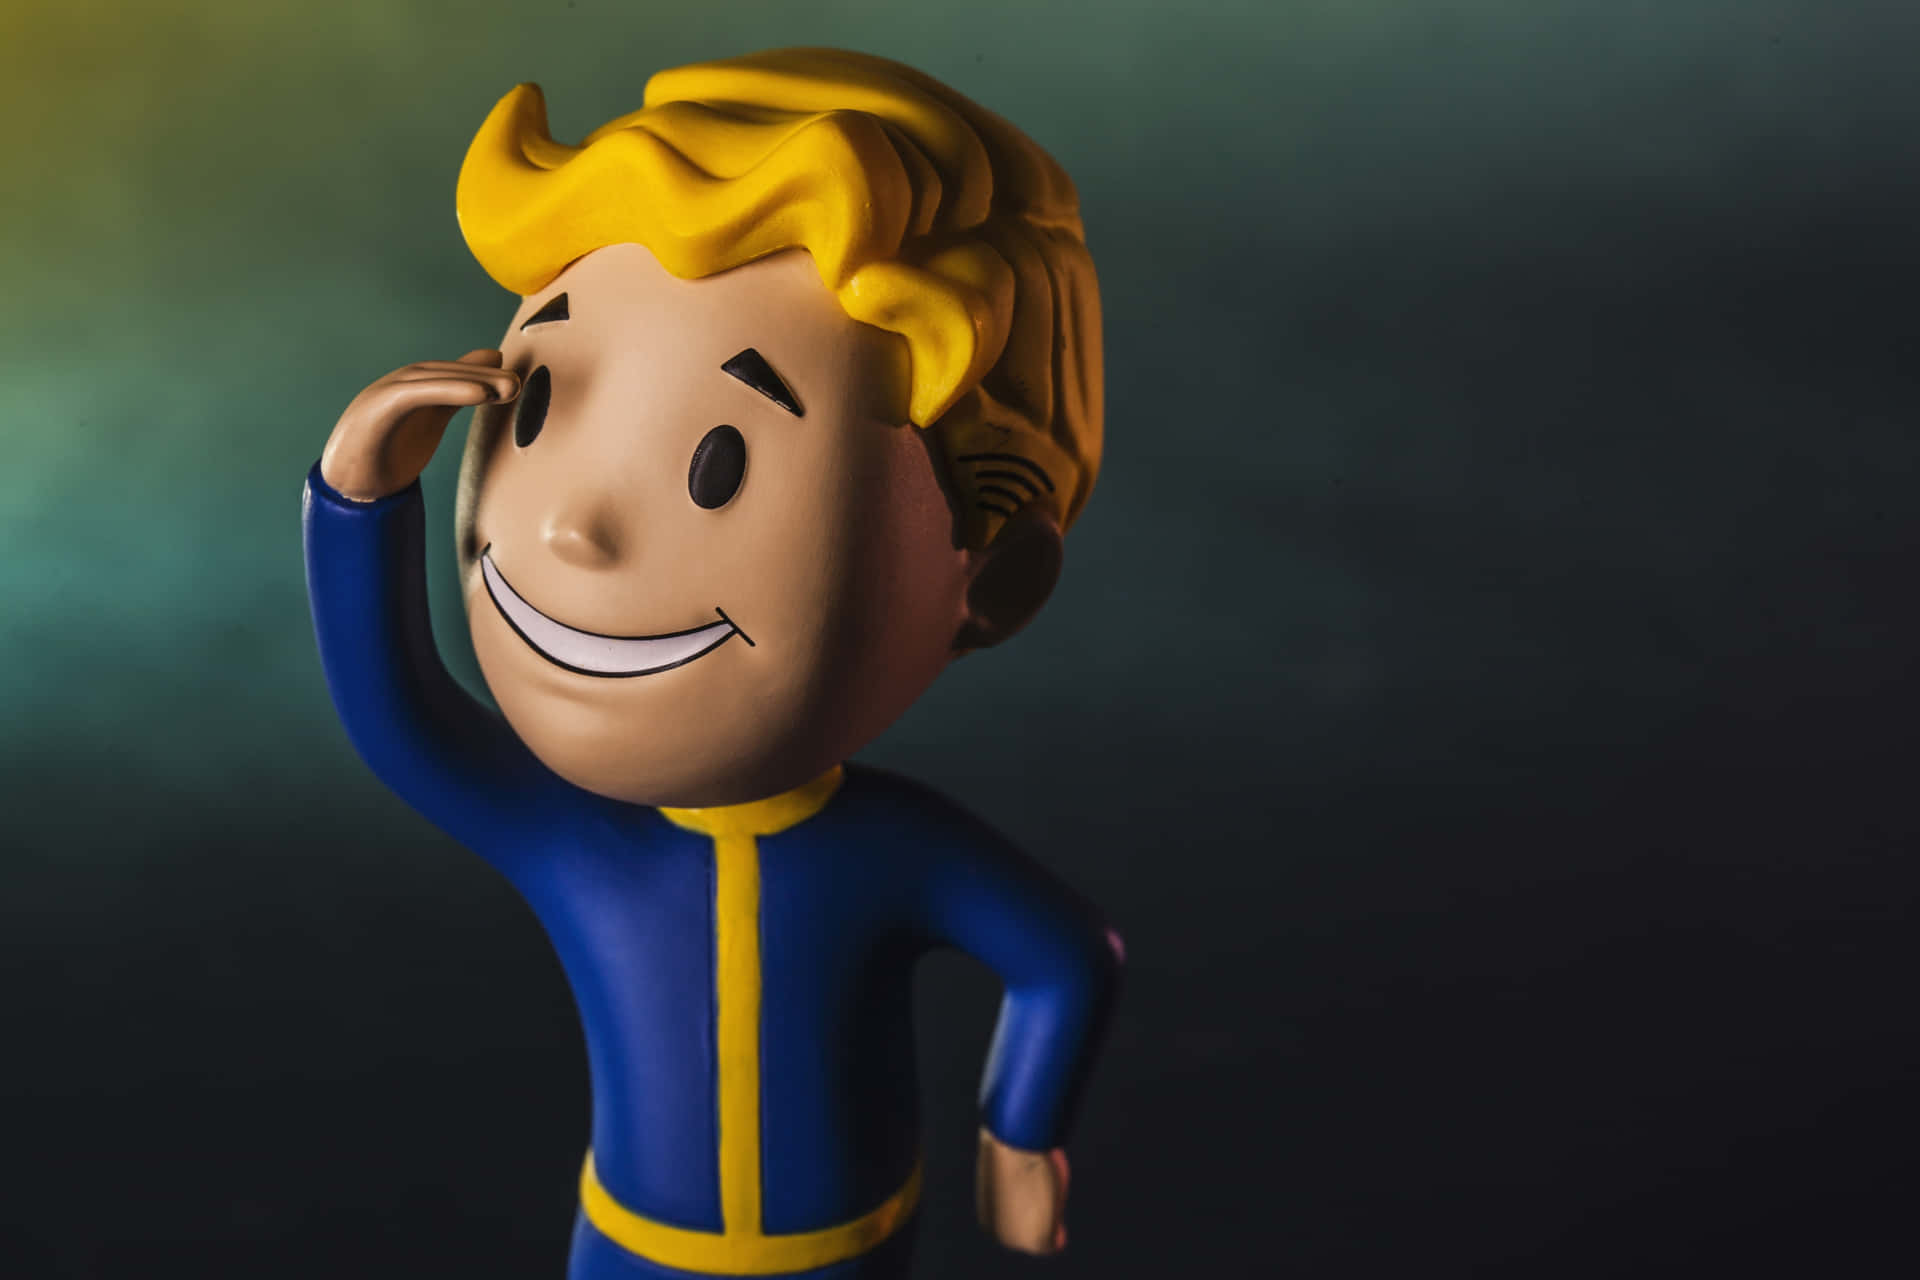 Vault Boy, den officielle maskot for Fallout, præger tapetet. Wallpaper